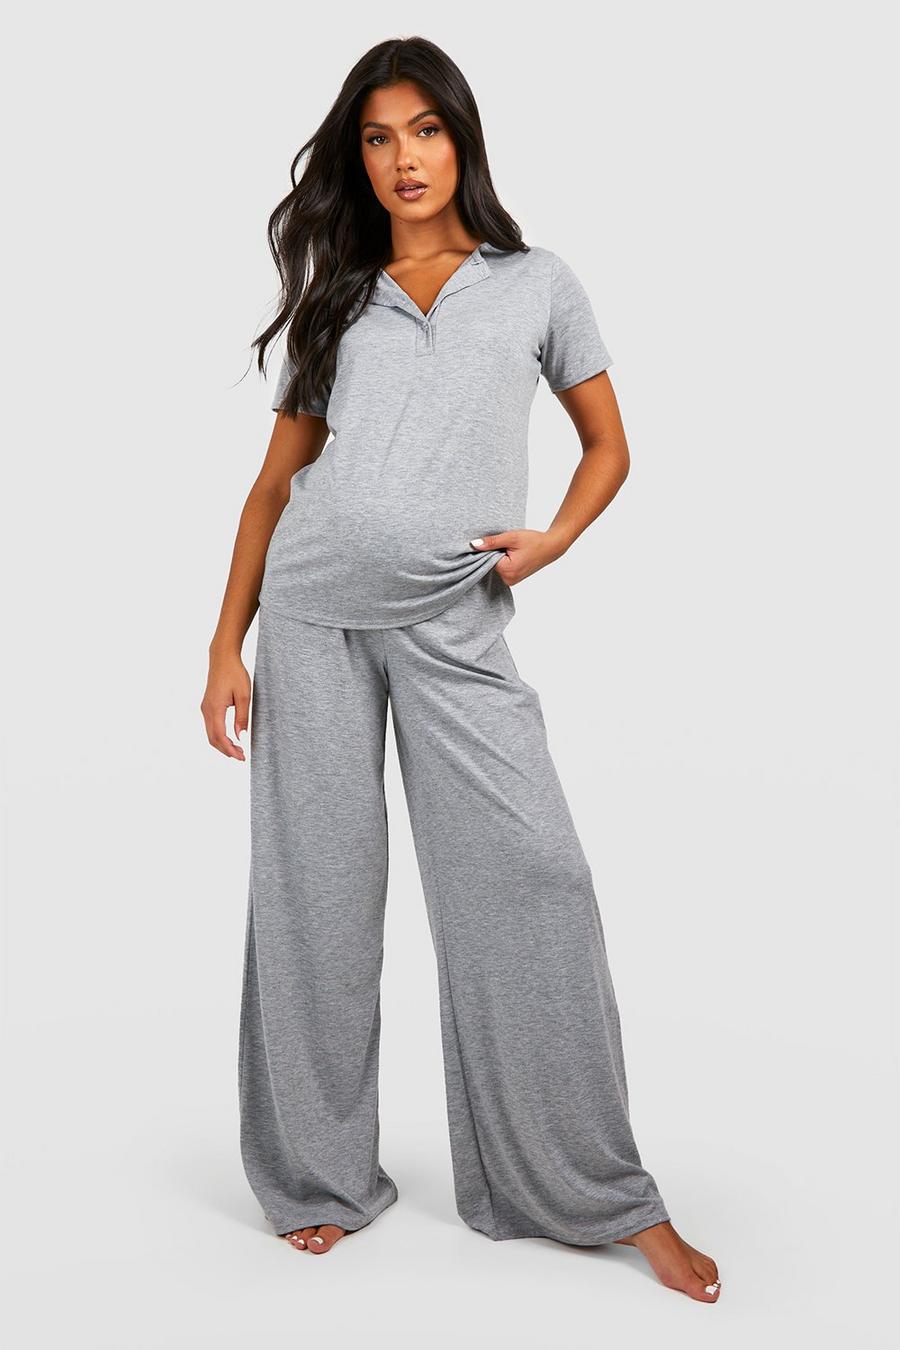 Grey marl Zwangerschap Voedings Pyjama Set Met Knopen